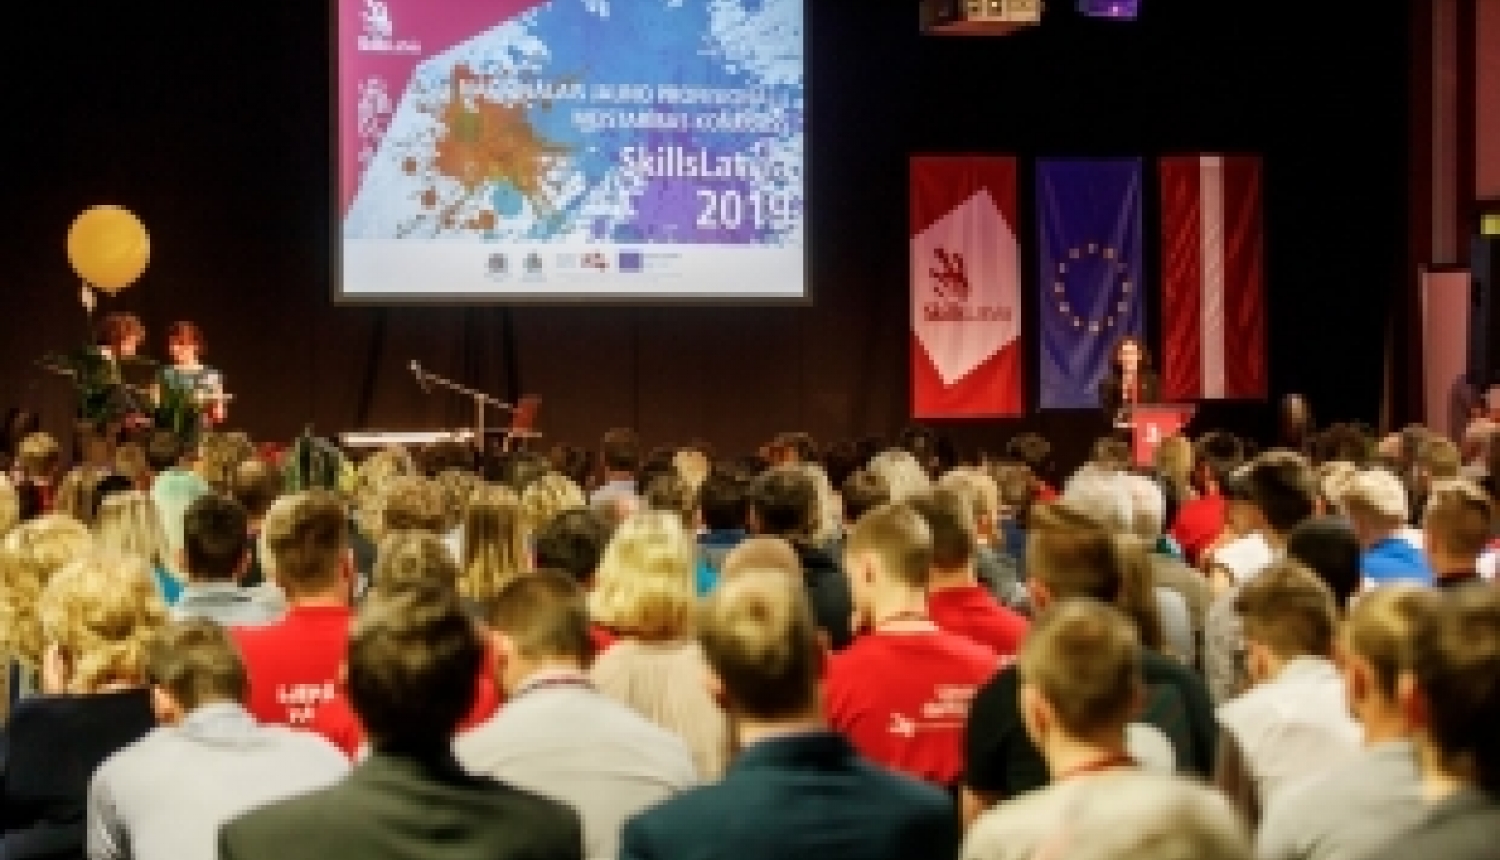 Jauno profesionāļu meistarības konkursā SkillsLatvia 2019 noskaidroti uzvarētāji